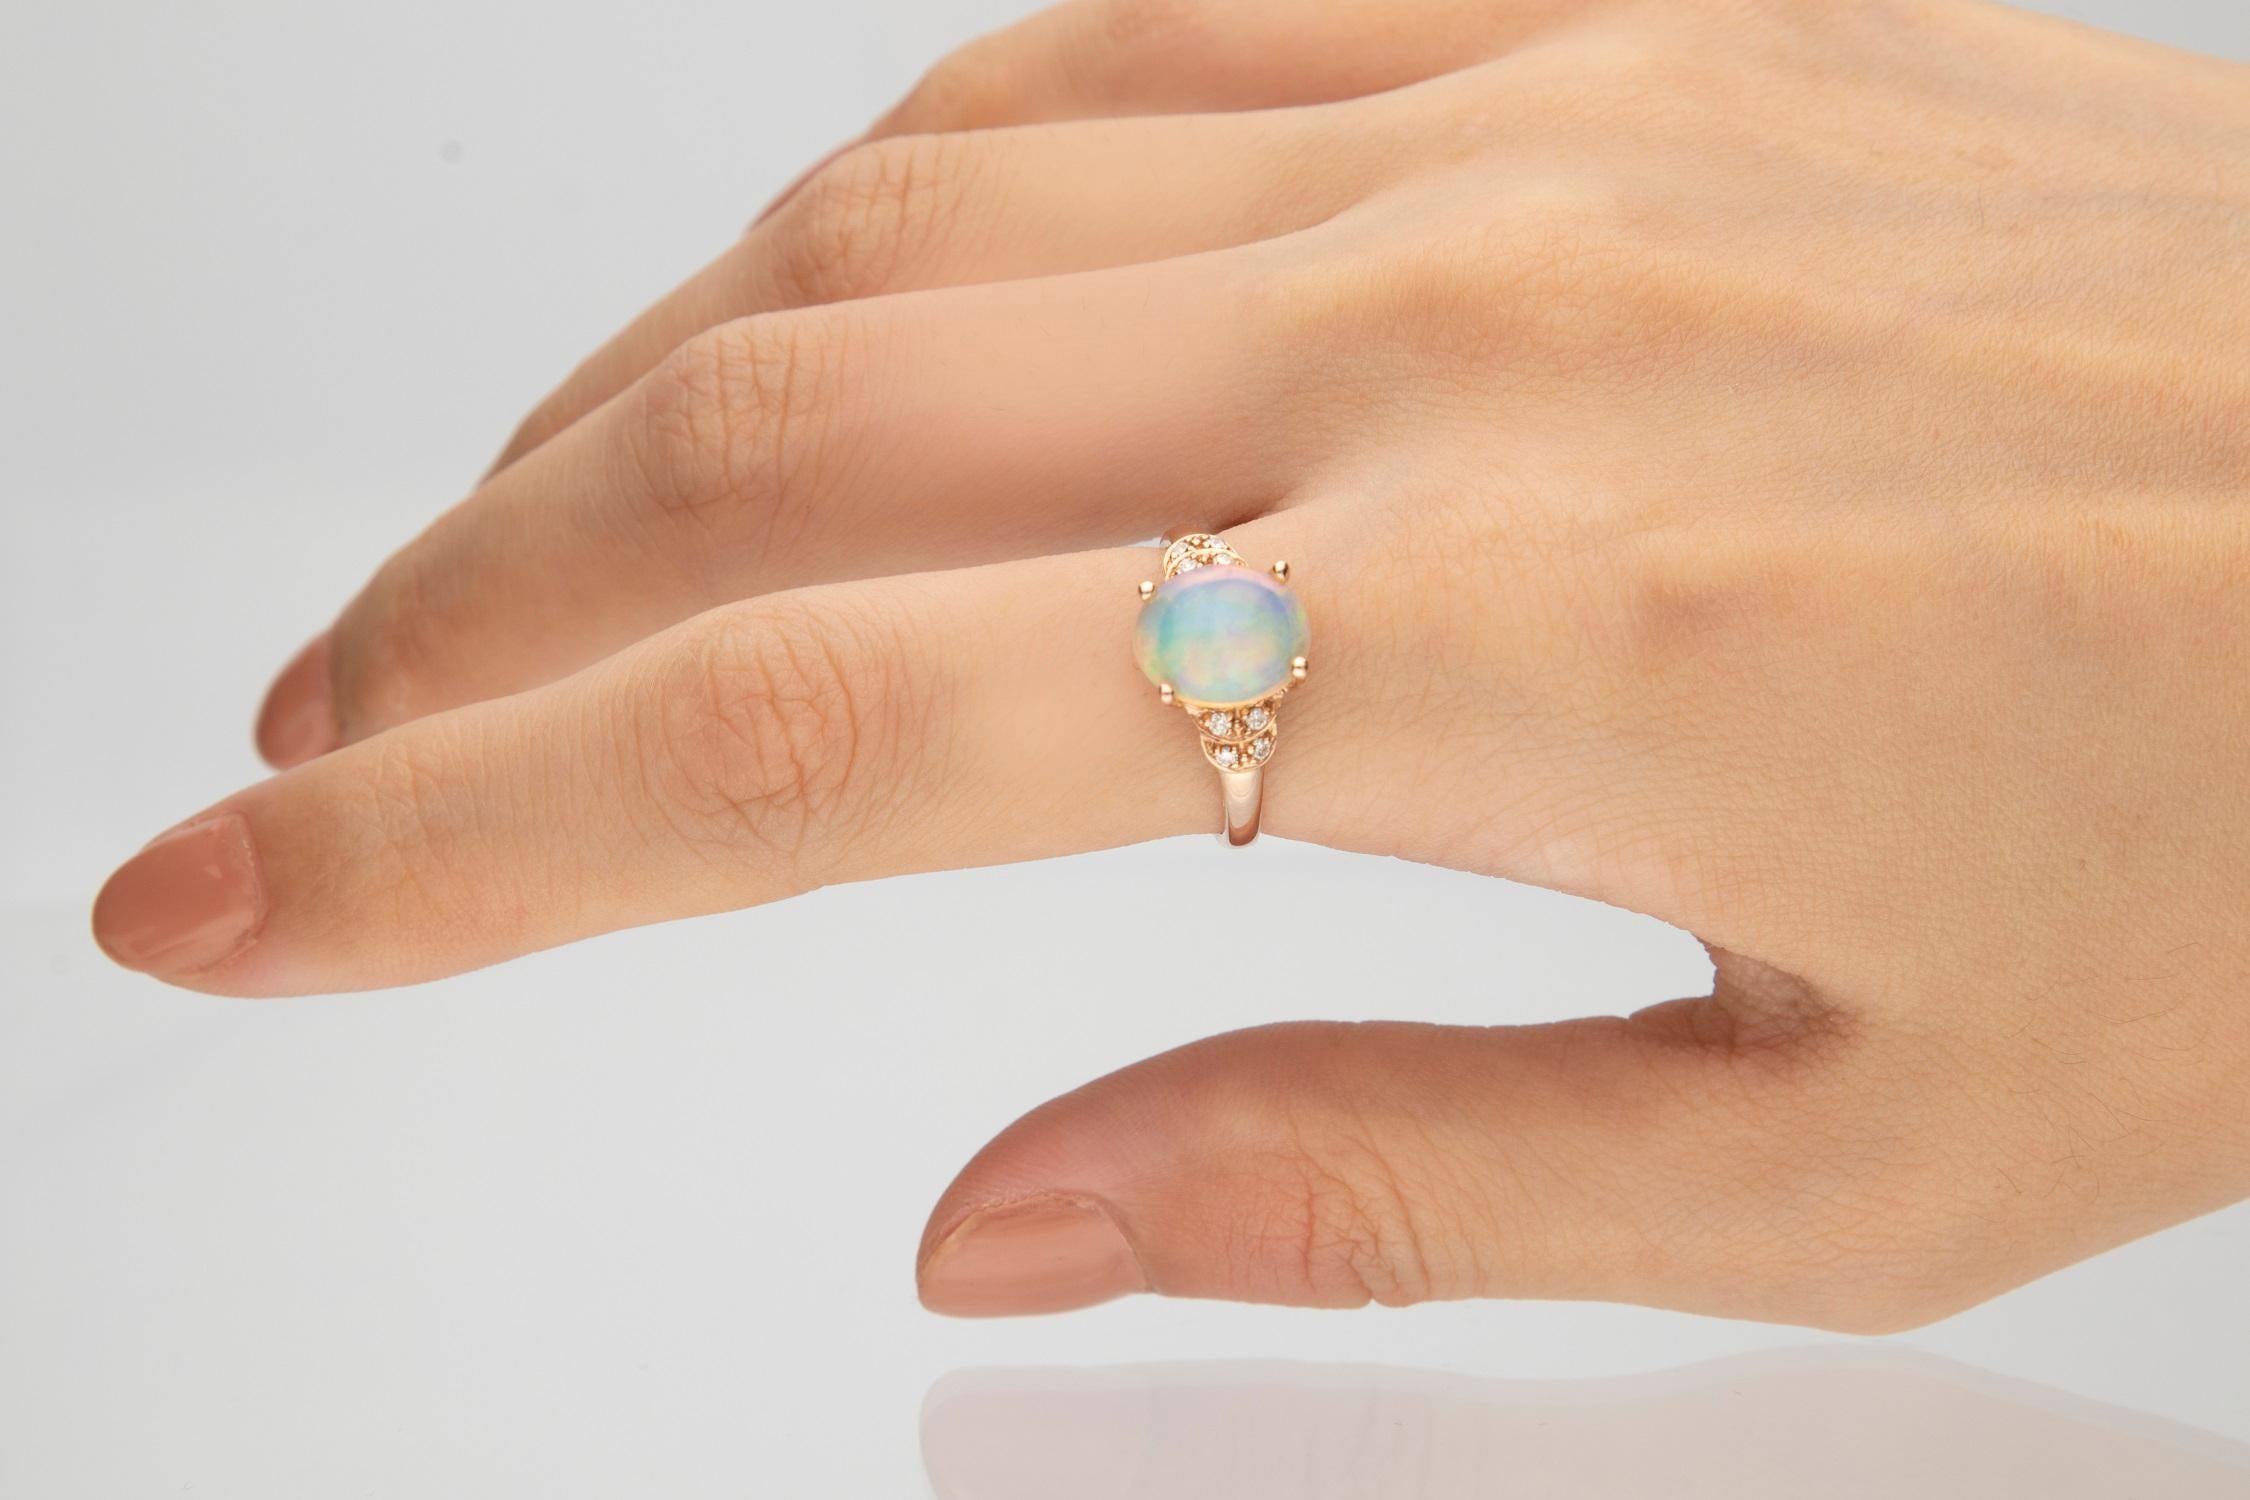 Ein wunderschöner australischer Opal im Ovalschliff steht im Mittelpunkt dieses bemerkenswerten Rings von Gin and Grace, der an den Seiten mit Diamanten im Rundschliff verziert ist. Dieser Ring aus wunderschönem 10-karätigem Roségold glänzt mit